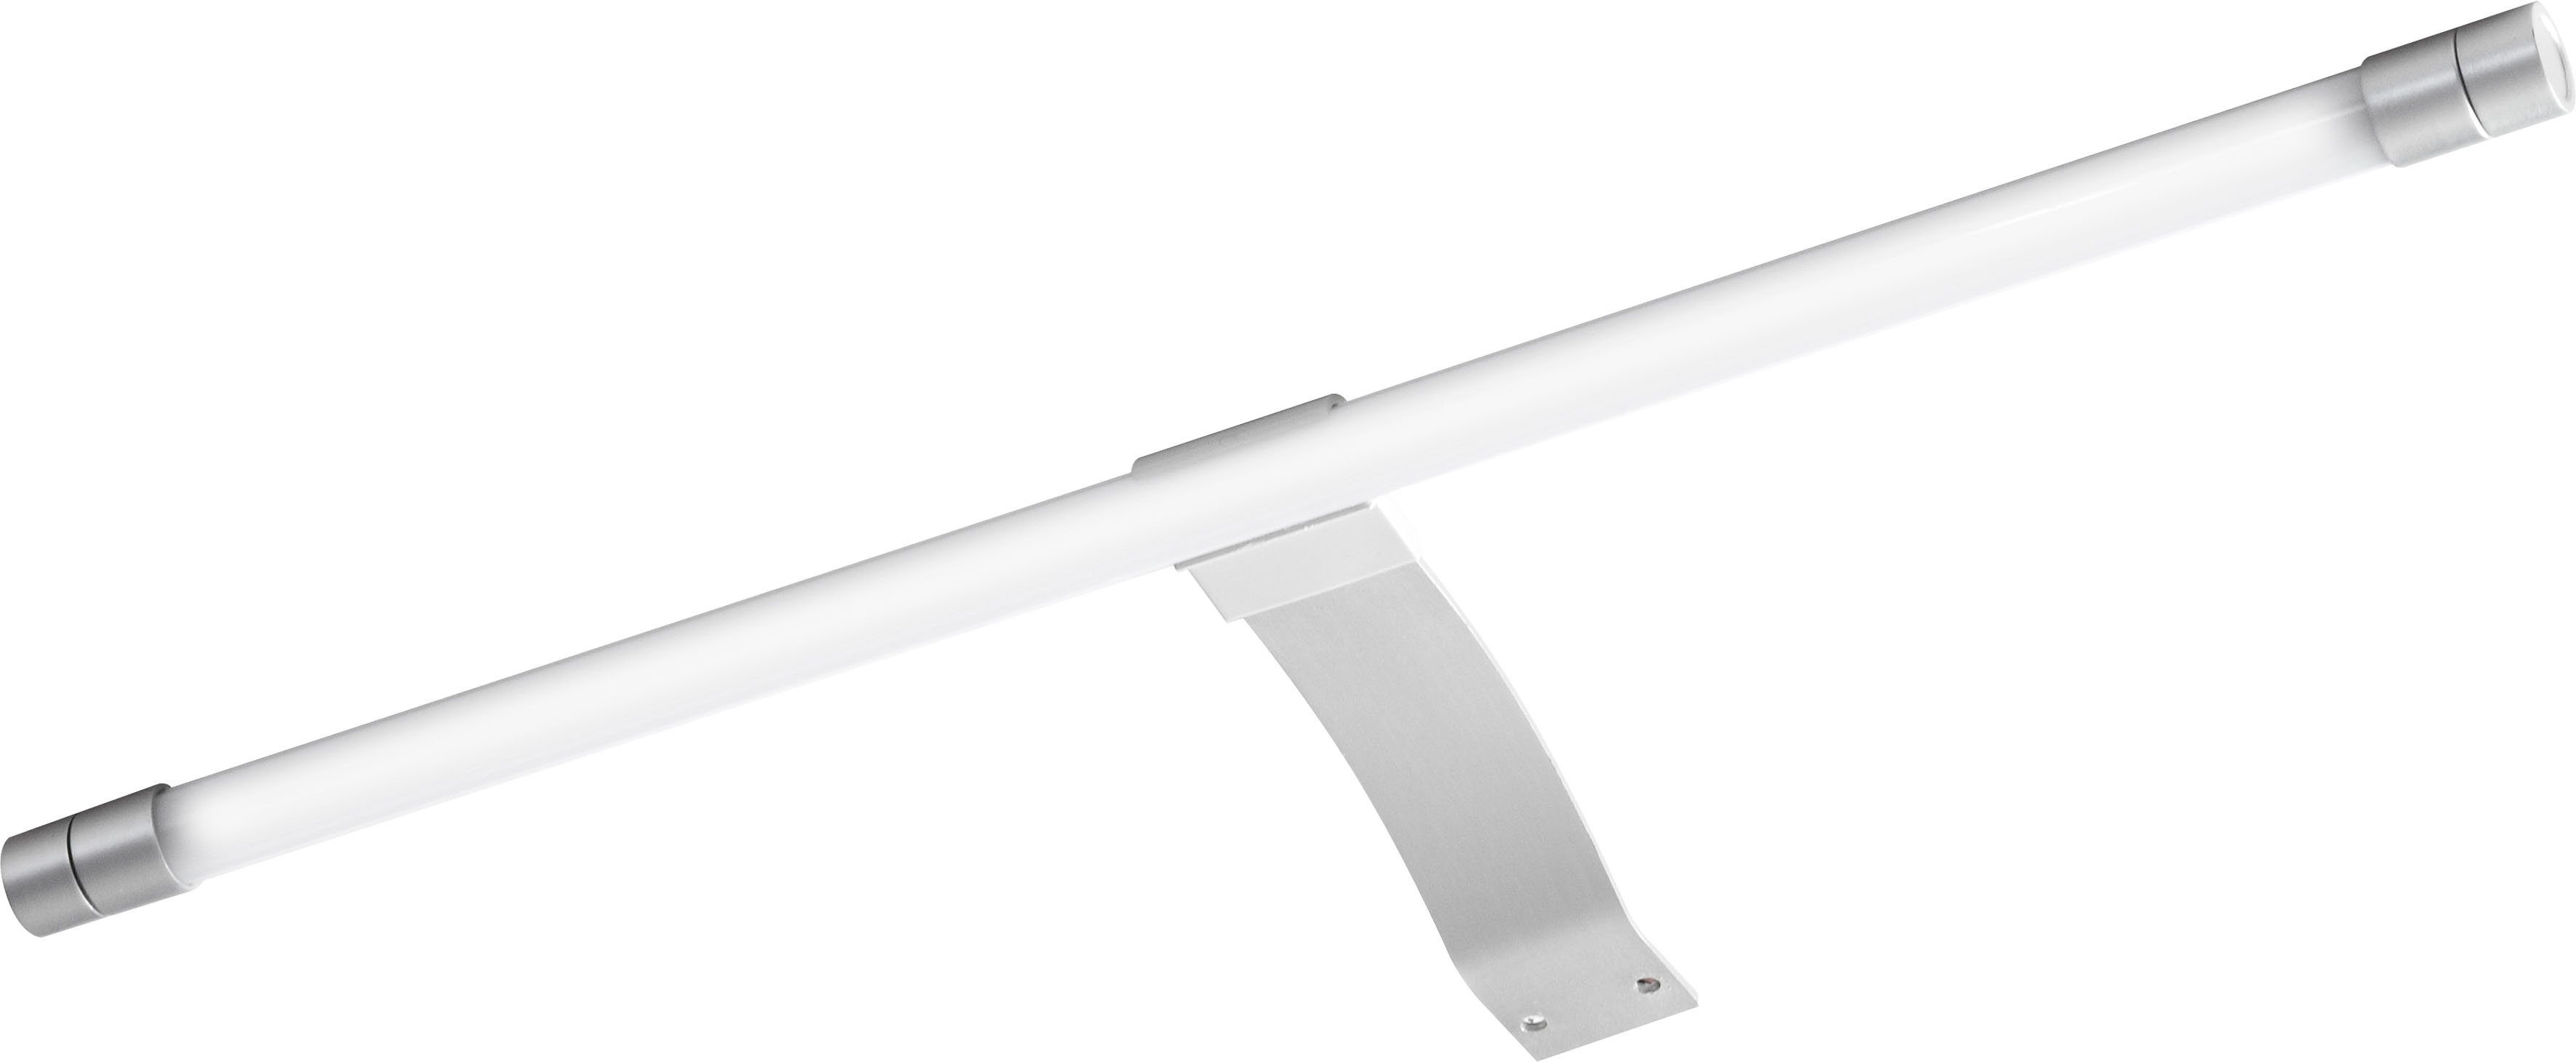 PELIPAL LED Spiegelleuchte Quickset 963, LED fest integriert, Kaltweiß, Breite 40 cm, Lichtfarbe kaltweiß, Aufbauleuchte silberfarben | Spiegelleuchten